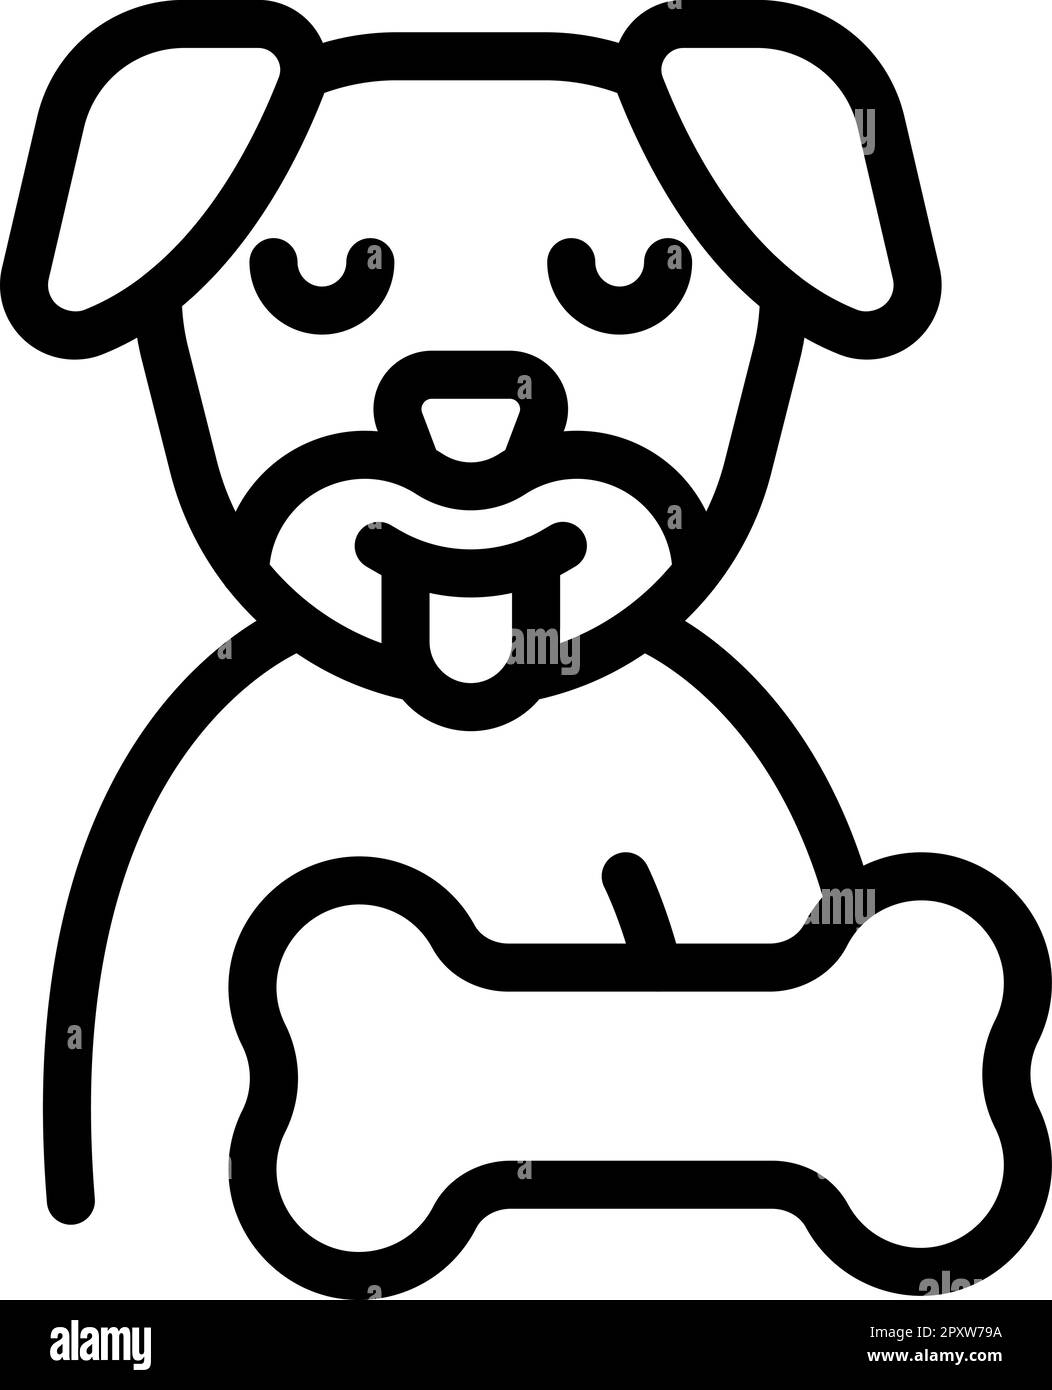 Cafetería para mascotas Imágenes de stock en blanco y negro - Página 2 -  Alamy